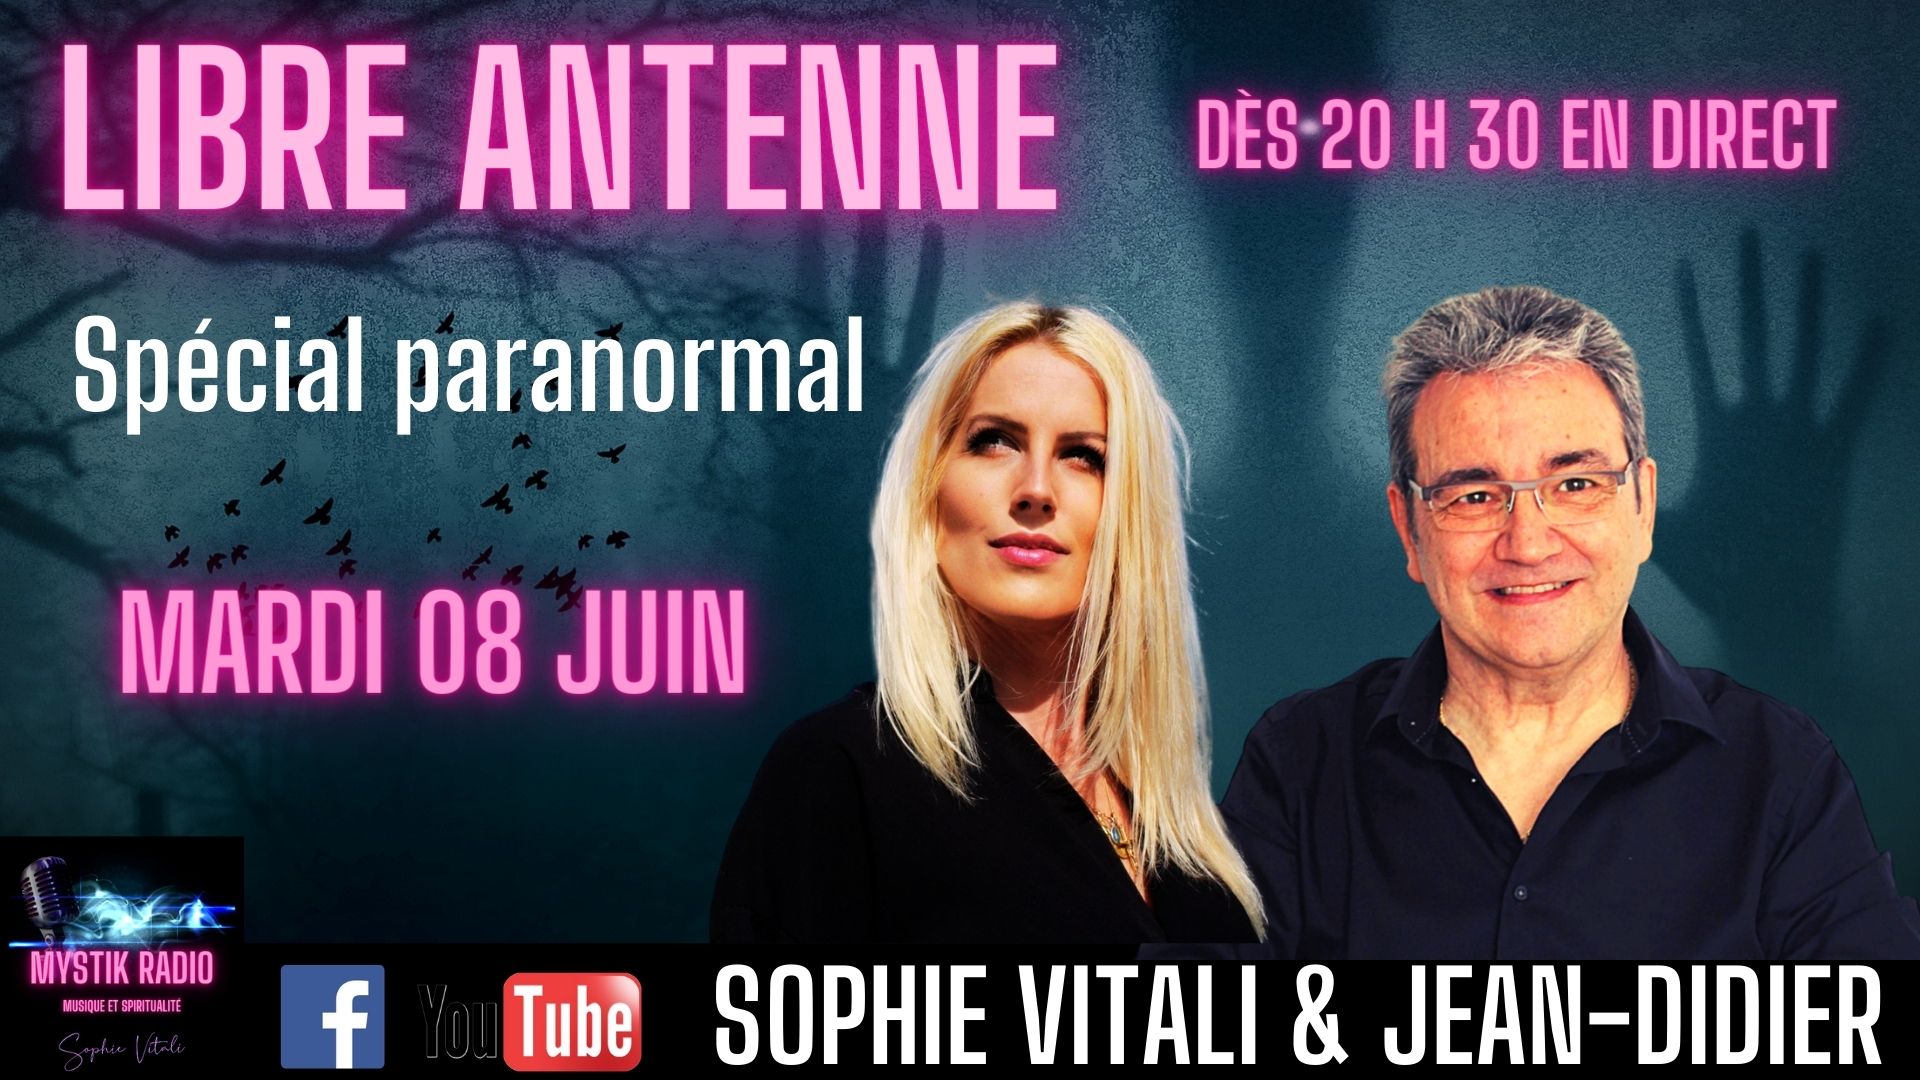 Le libre antenne animé par Sophie Vitali et Jean-Didier